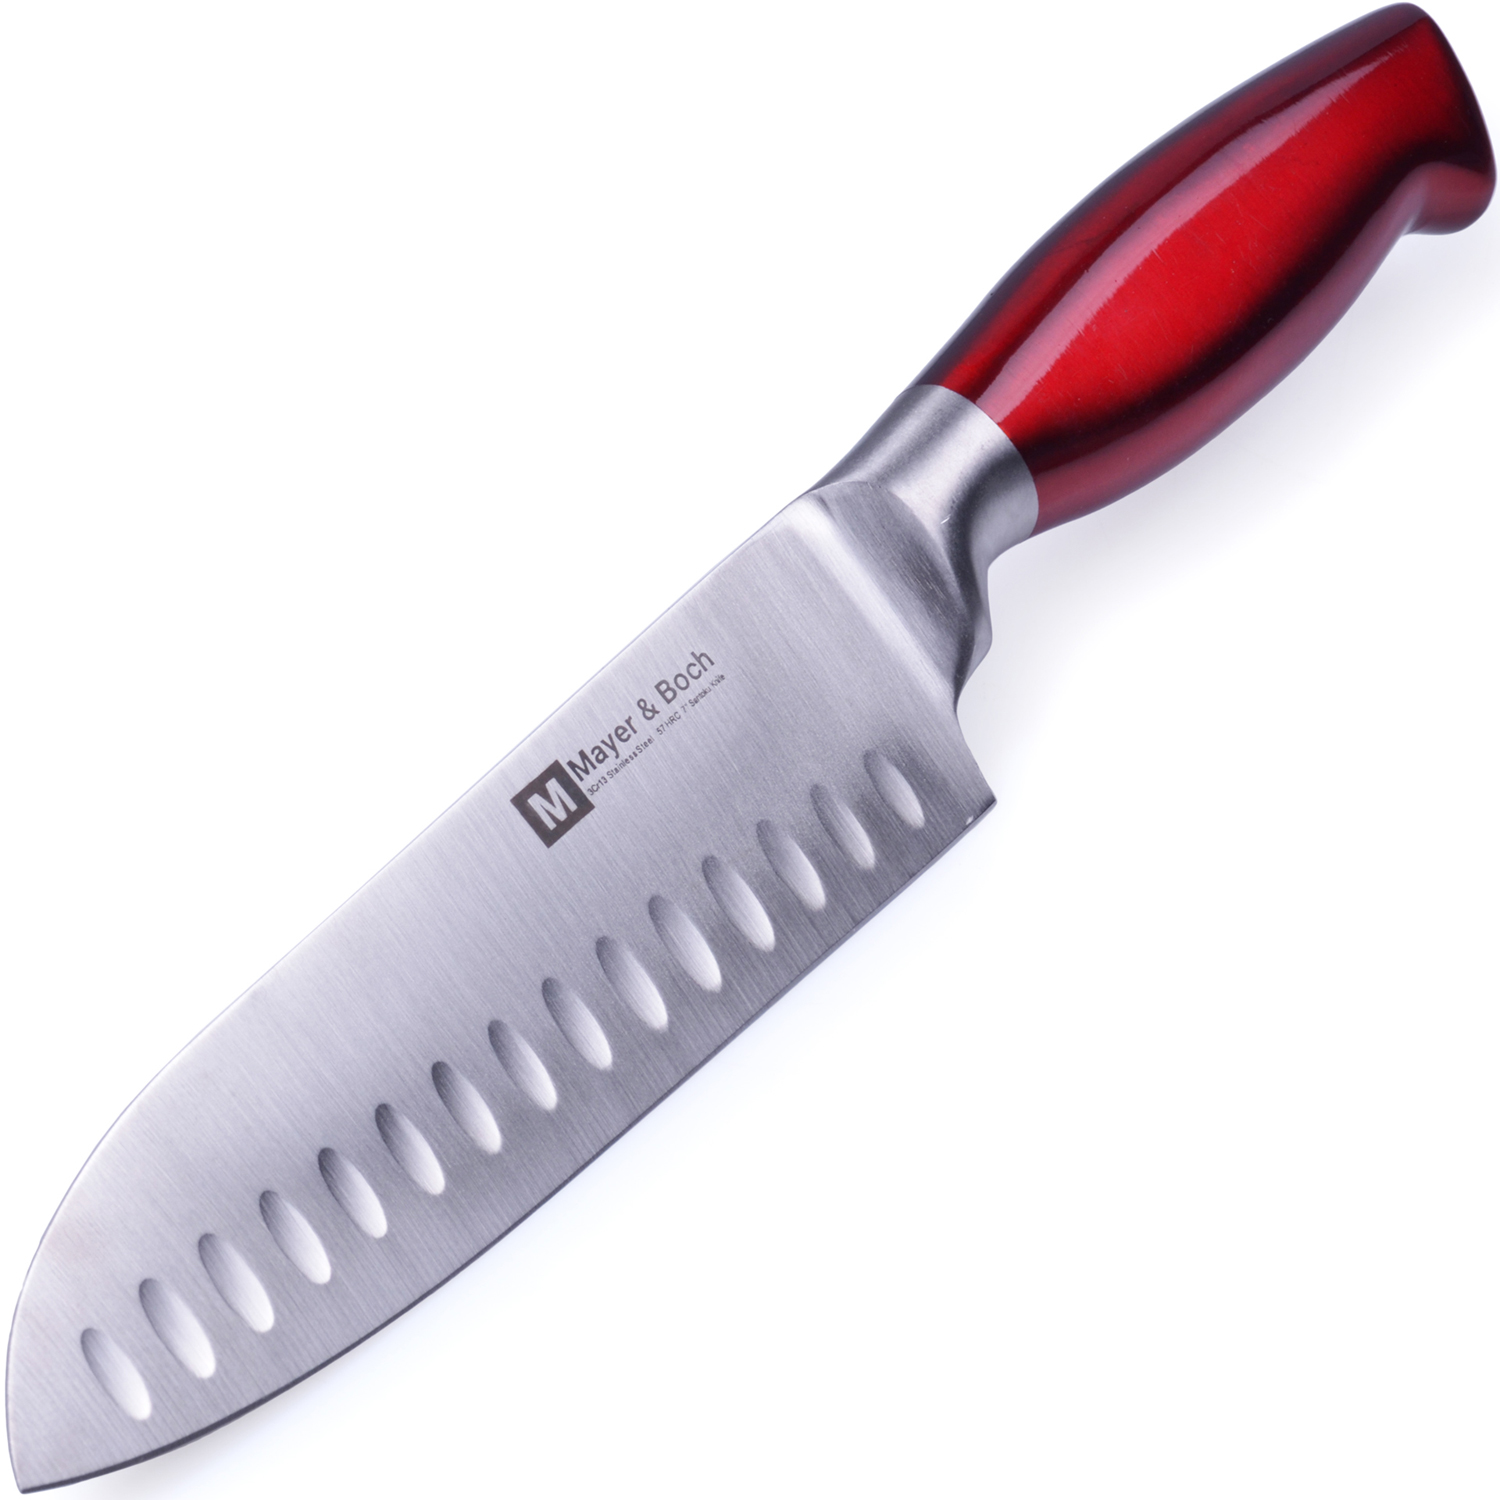 фото Нож разделочный Mayer & Boch Nordic, цвет: серебристый, красный, длина лезвия 17,8 см